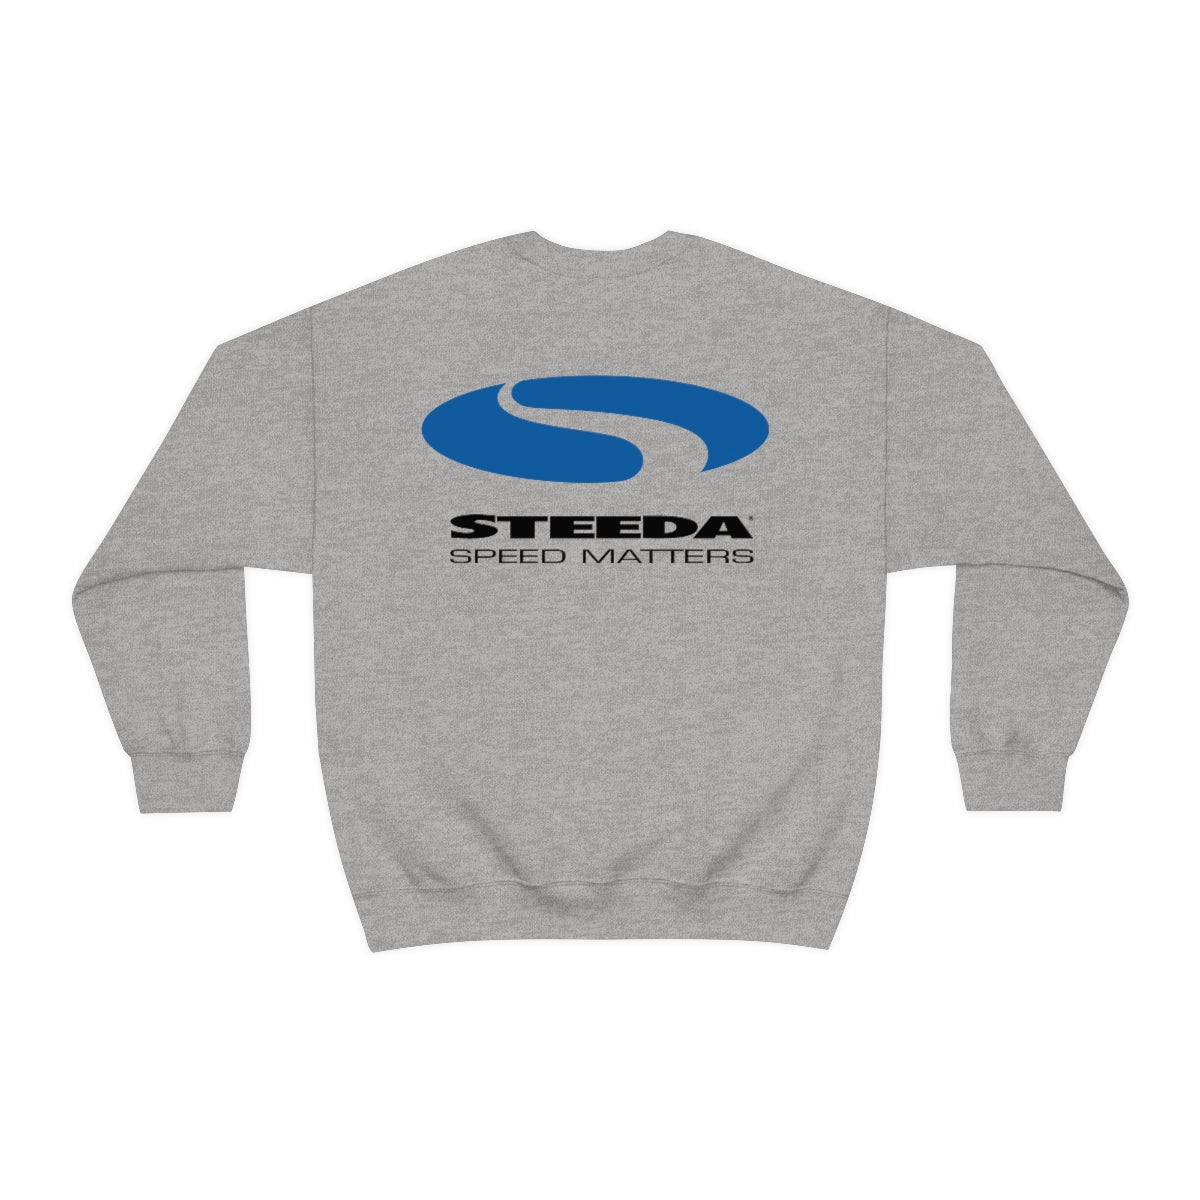 Sweatshirt mit Rundhalsausschnitt und Steeda-Logo - 3 Farben